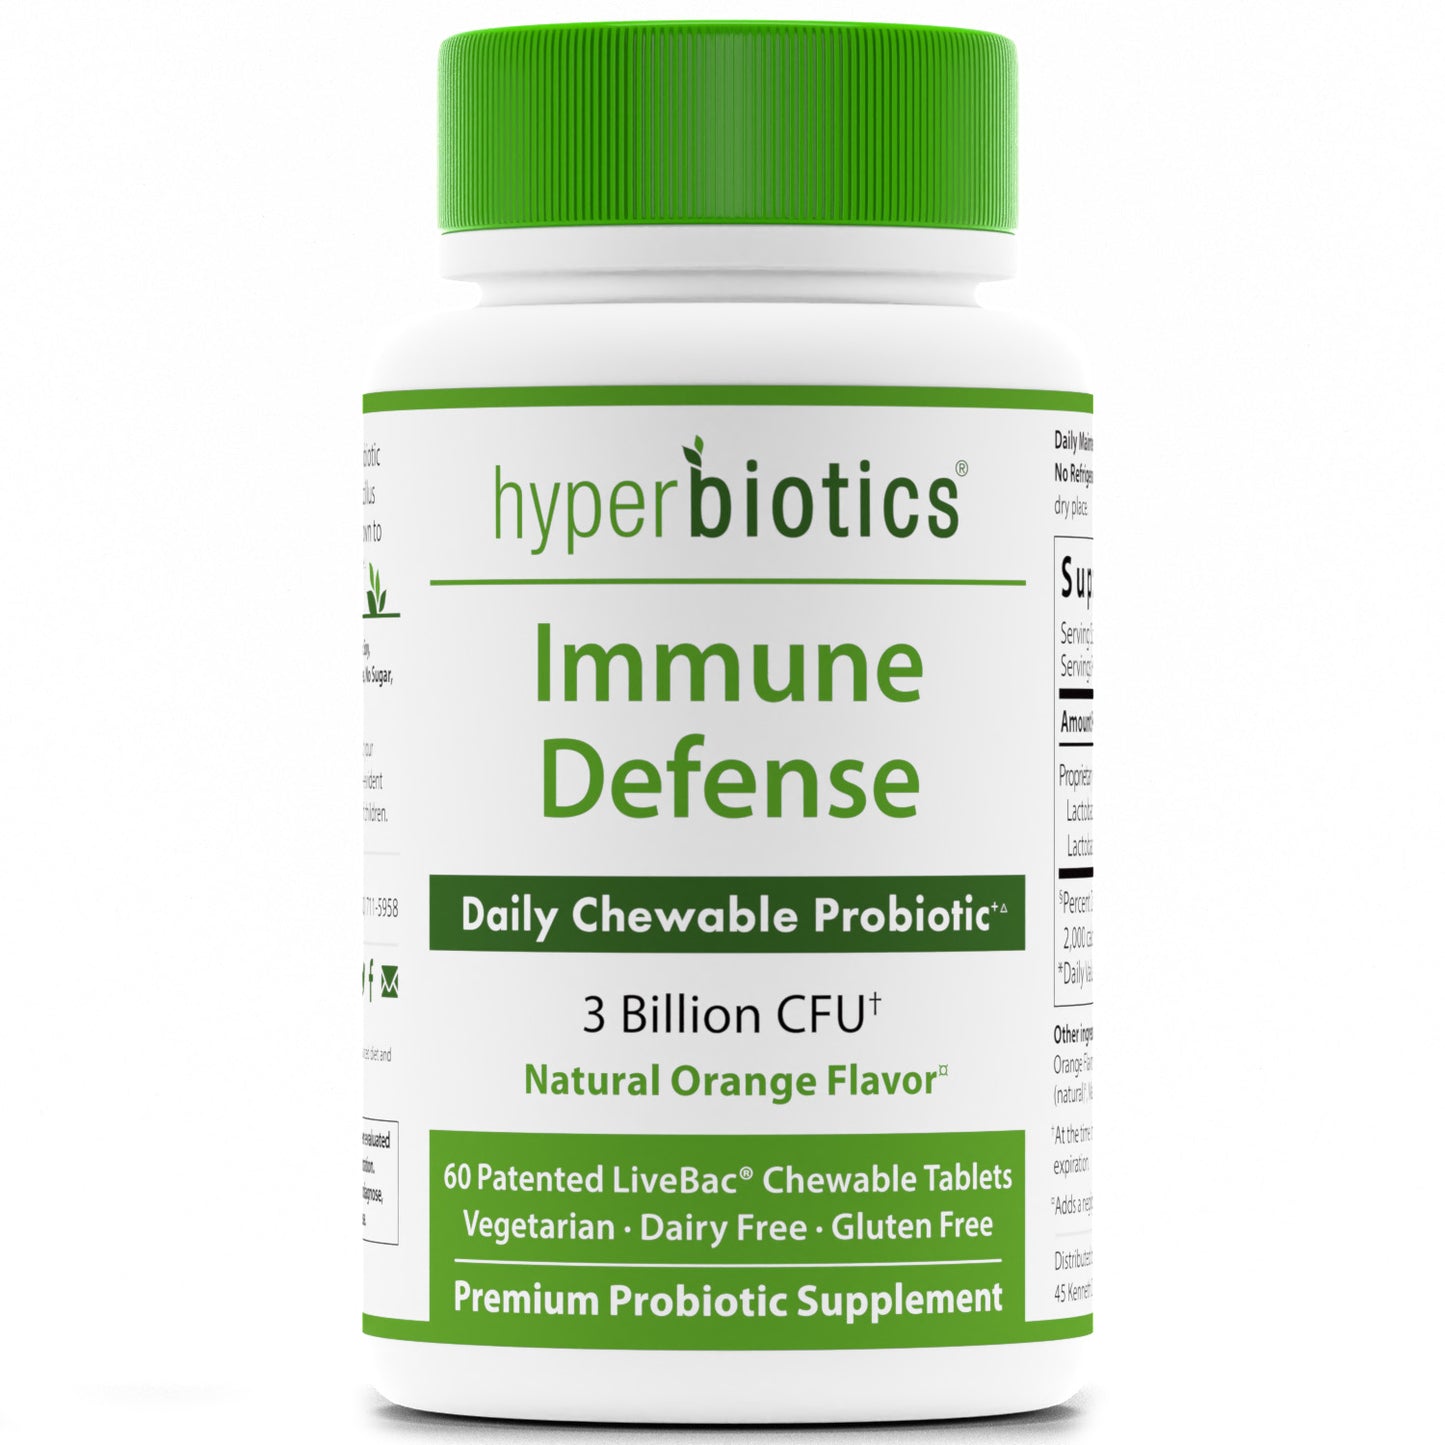 Hyperbiotics Immune Defense Probiotic Chewable Tablets bottle image.